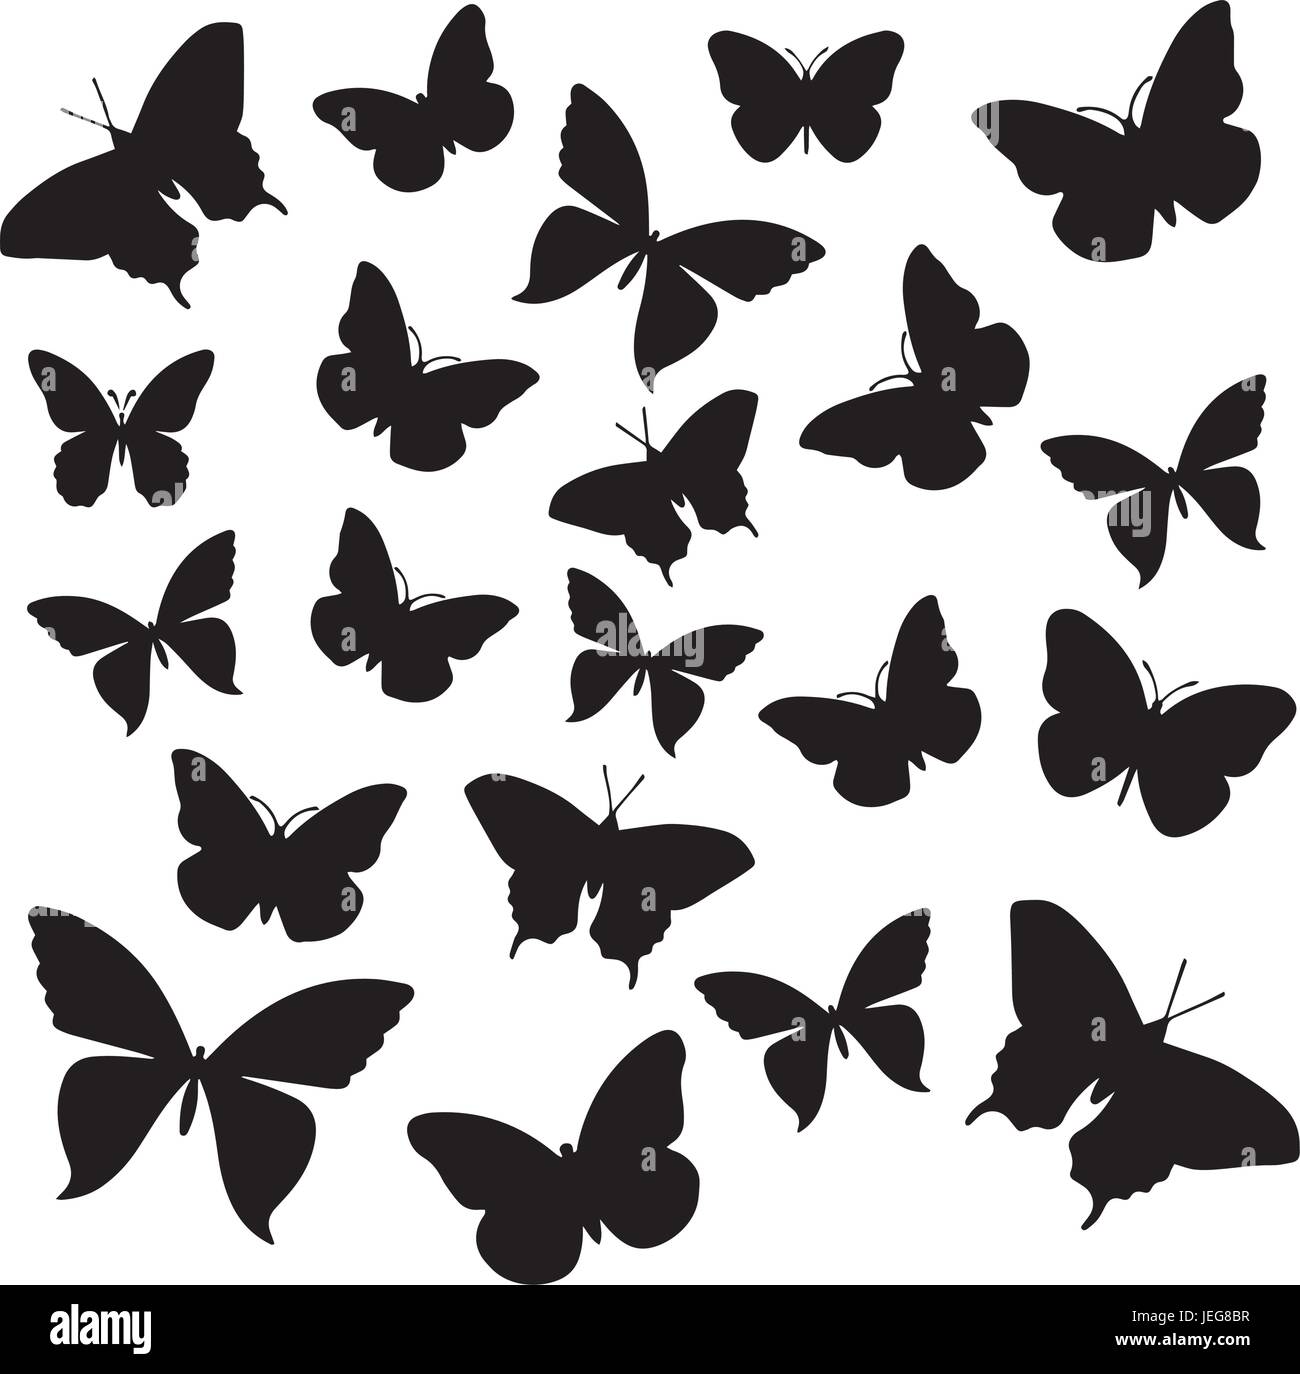 Schwarz / weiß Silhouette von Schmetterlingen. Stock Vektor